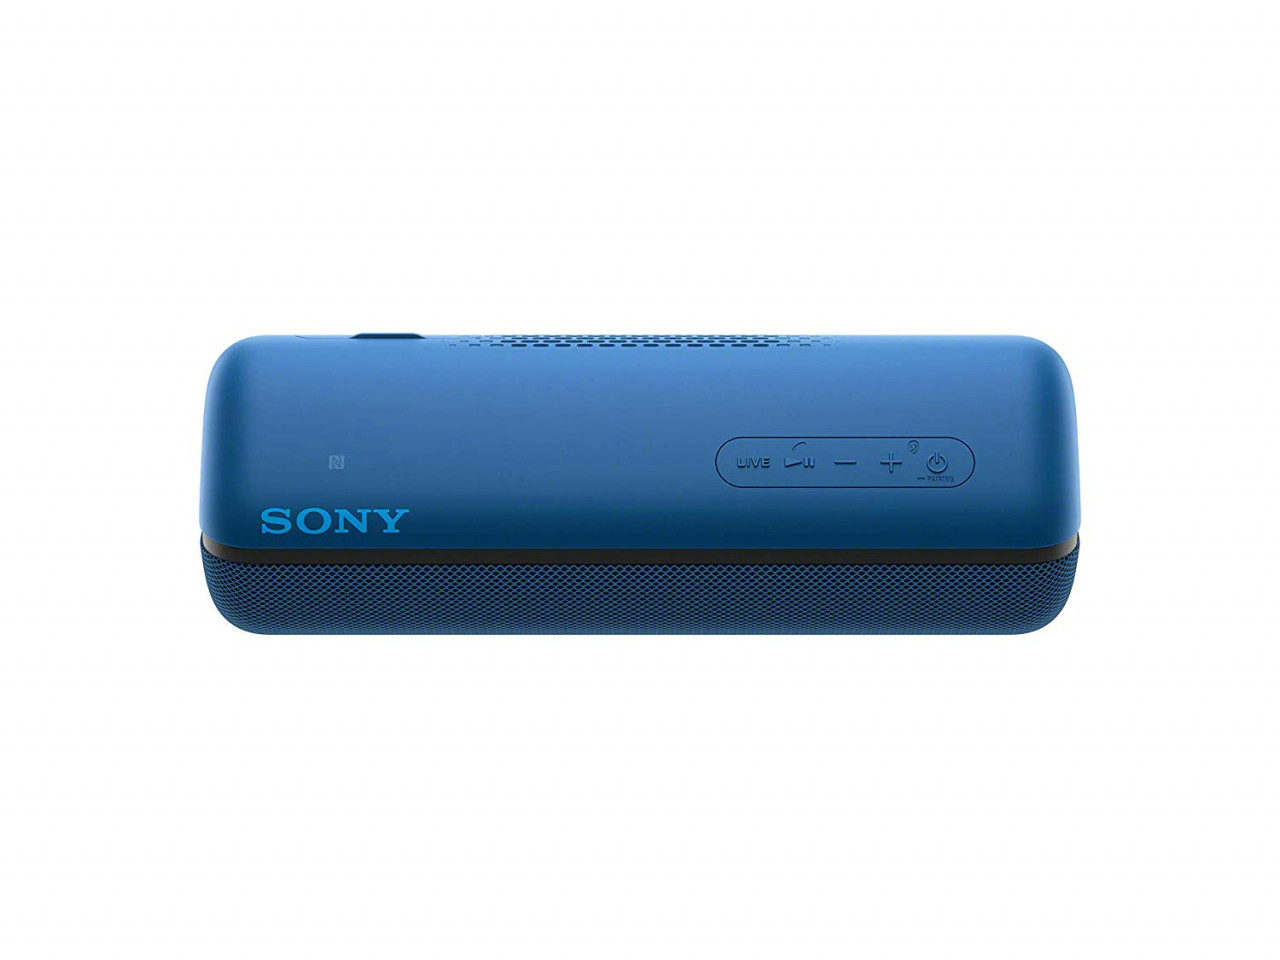 Sony SRS-XB32